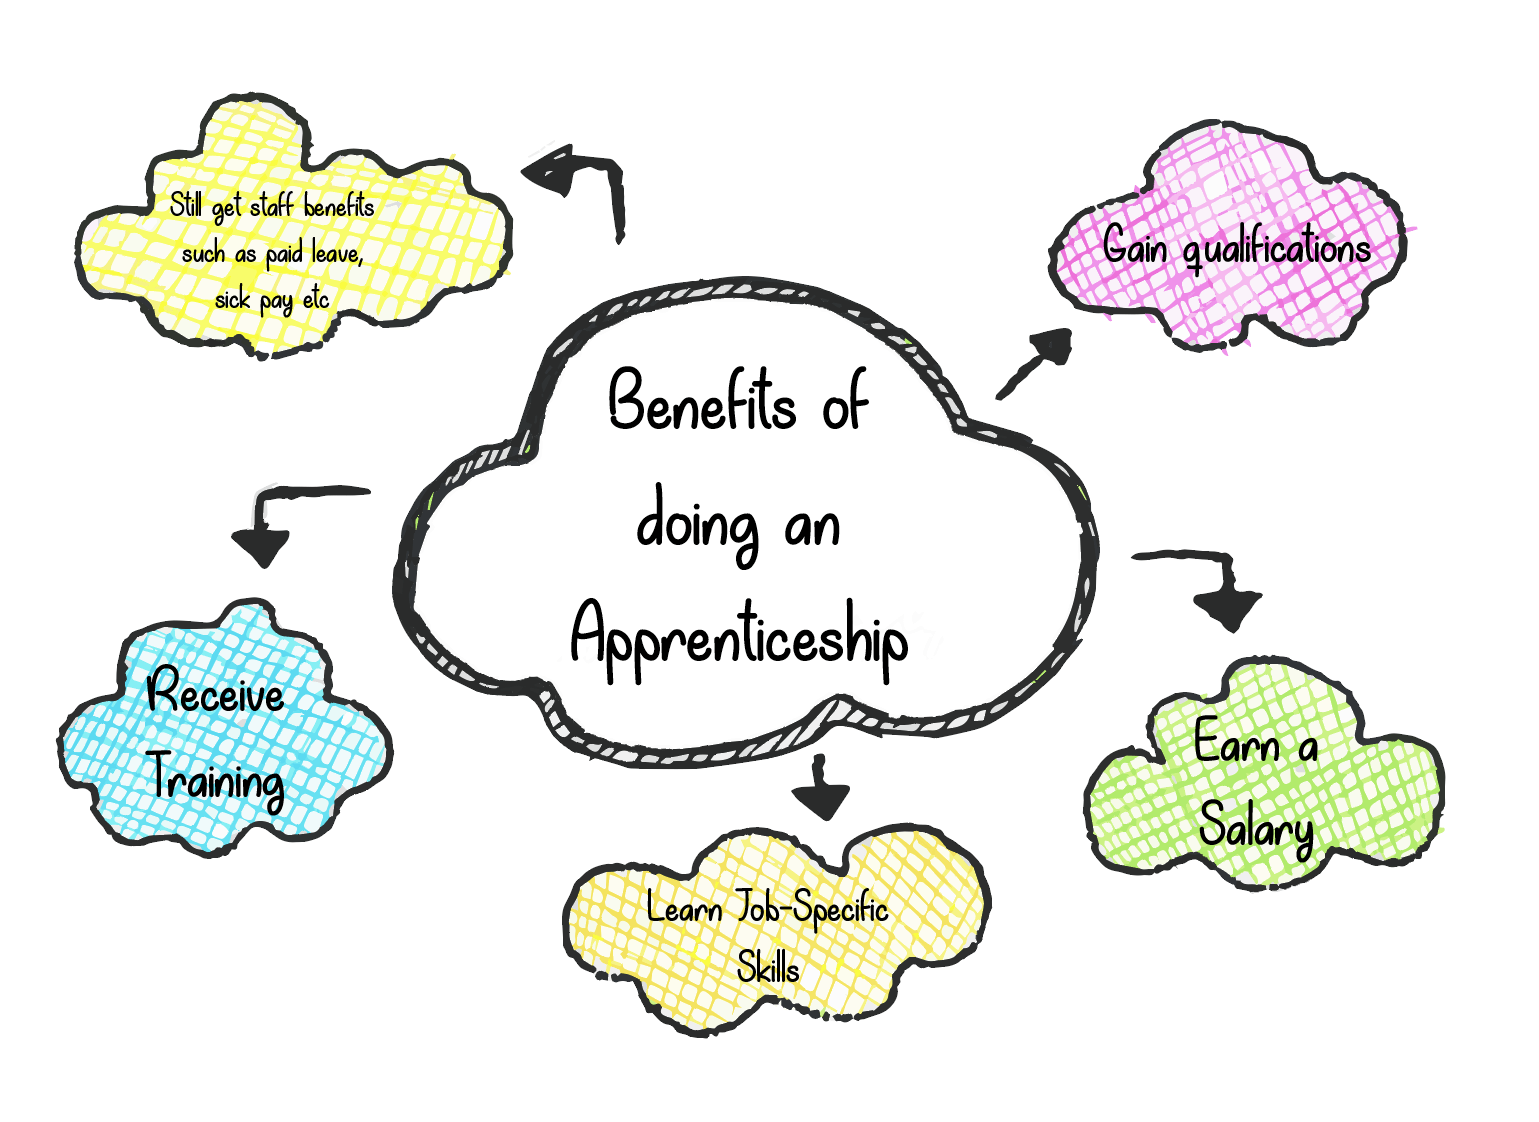 Benefits of apprenticeships